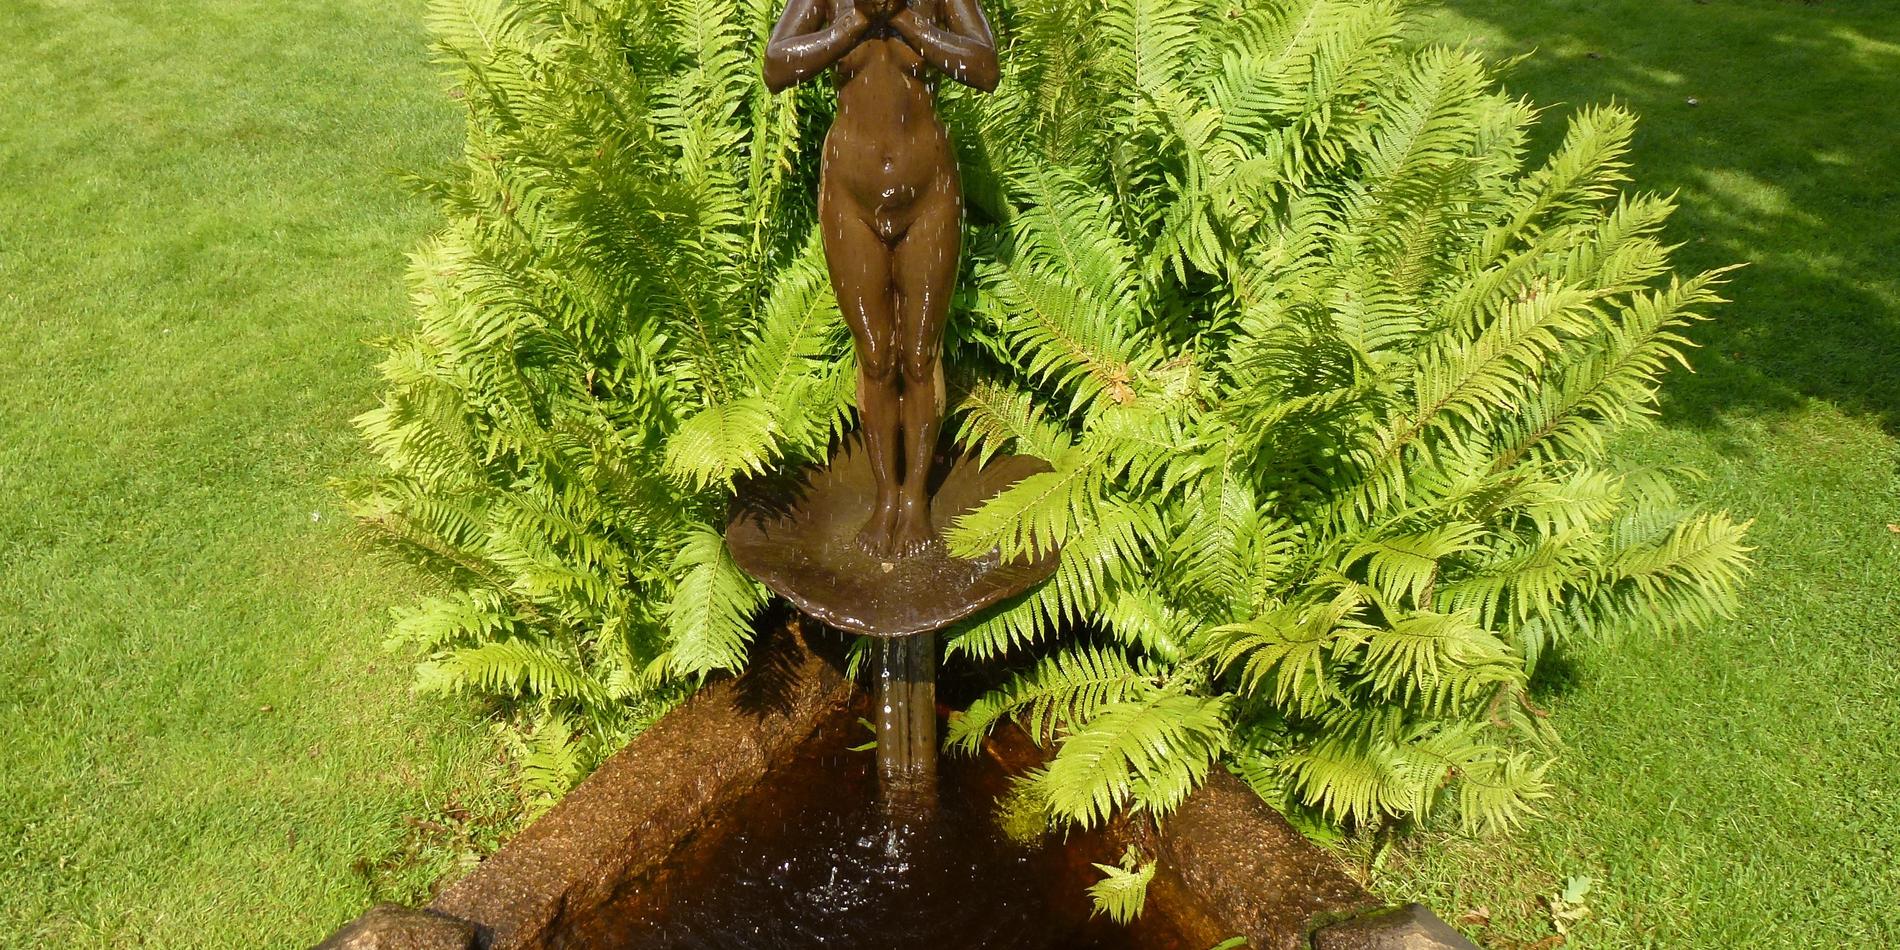 En annan avgjutning av skulpturen ”Morgonbad”, denna i Zorngårdens park i Mora.